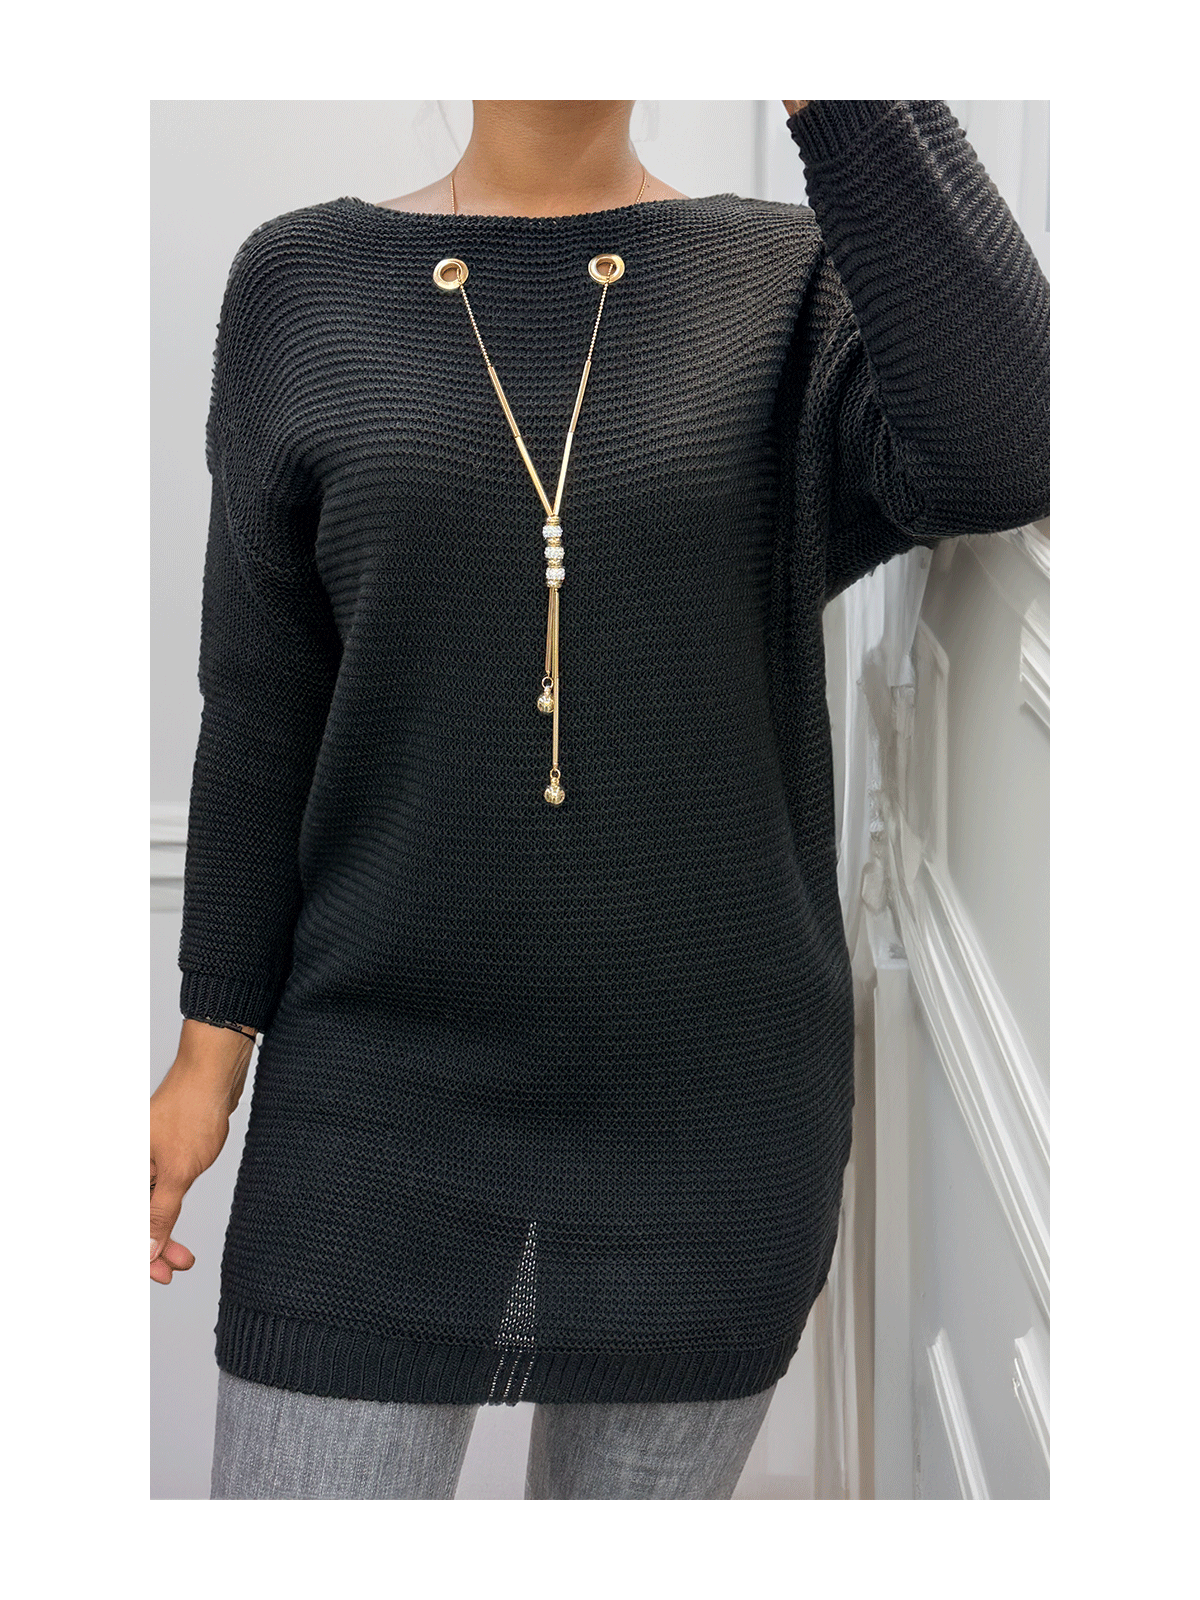 Tunique noir en tricot avec accessoires - 1